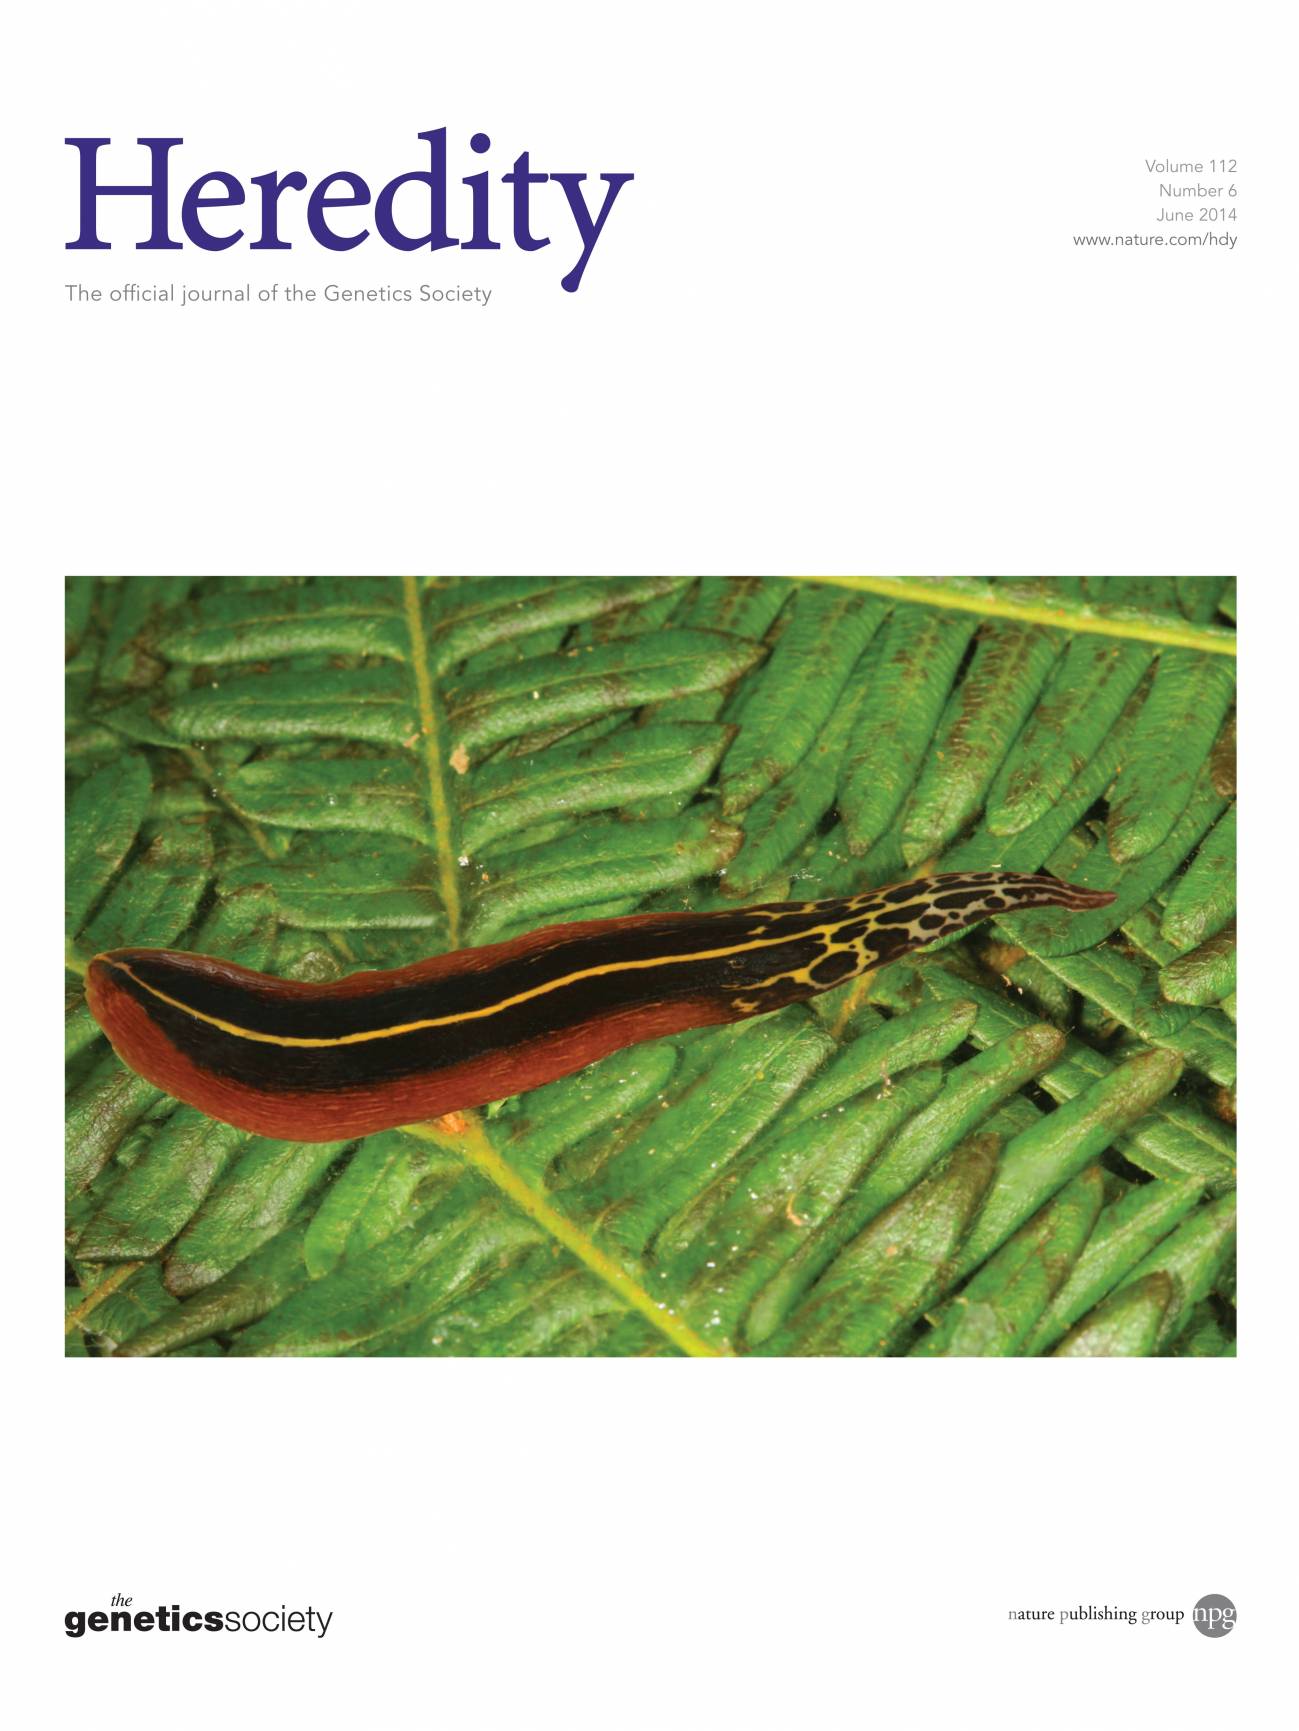 El nuevo trabajo científico está publicado en portada en la revista Heredity.